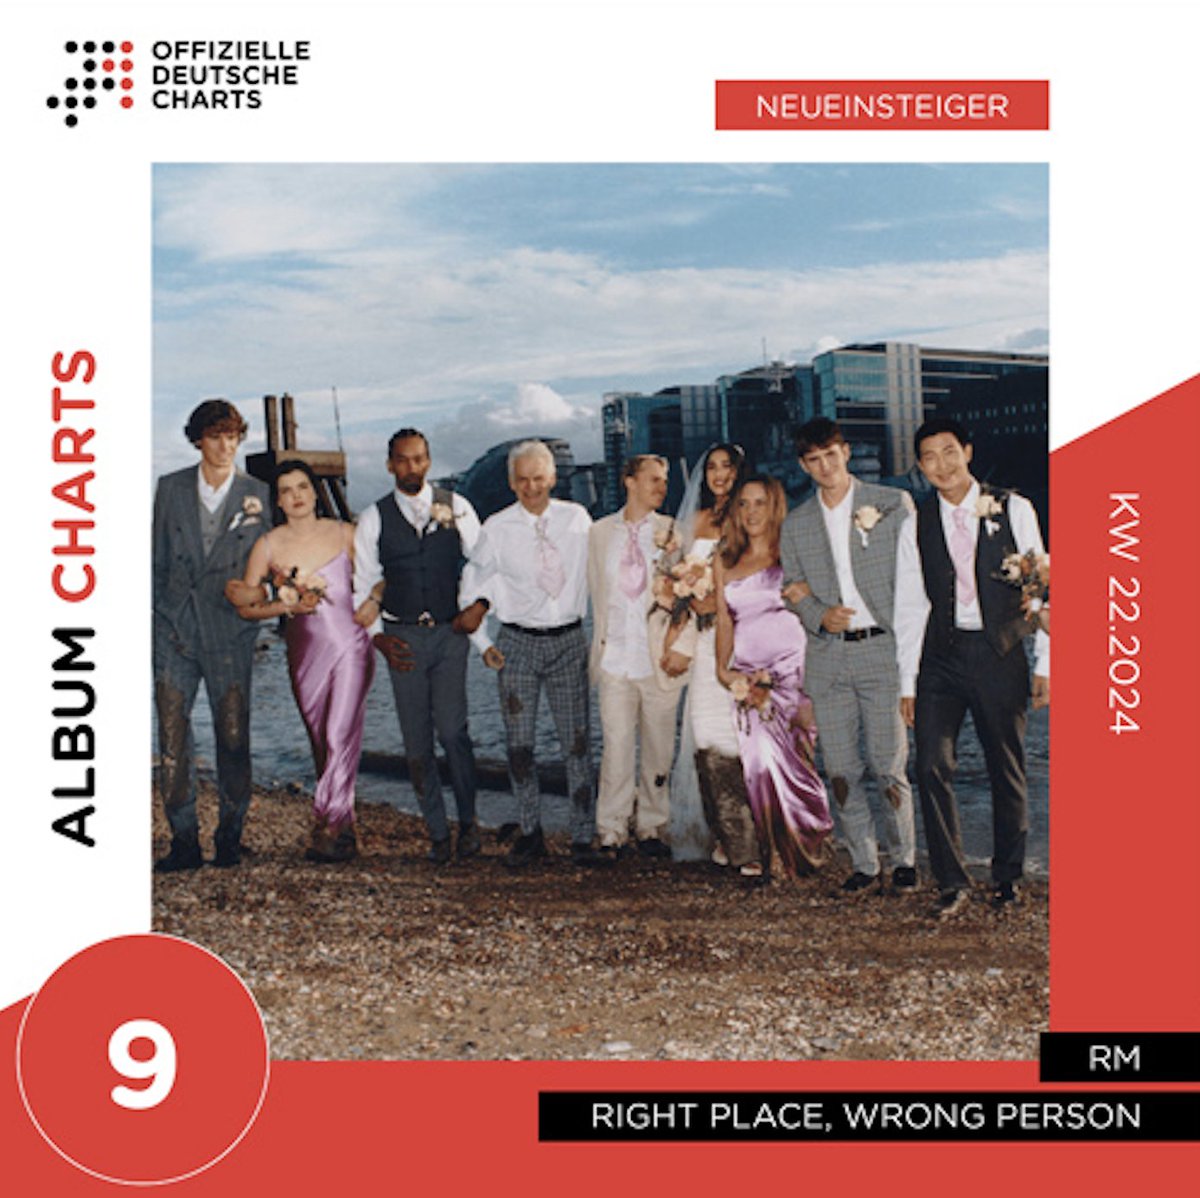 ¡'Right Place, Wrong Person' de RM debuta dentro del Top 10 de la lista de álbumes oficiales en Alemania! (#9) 🇩🇪